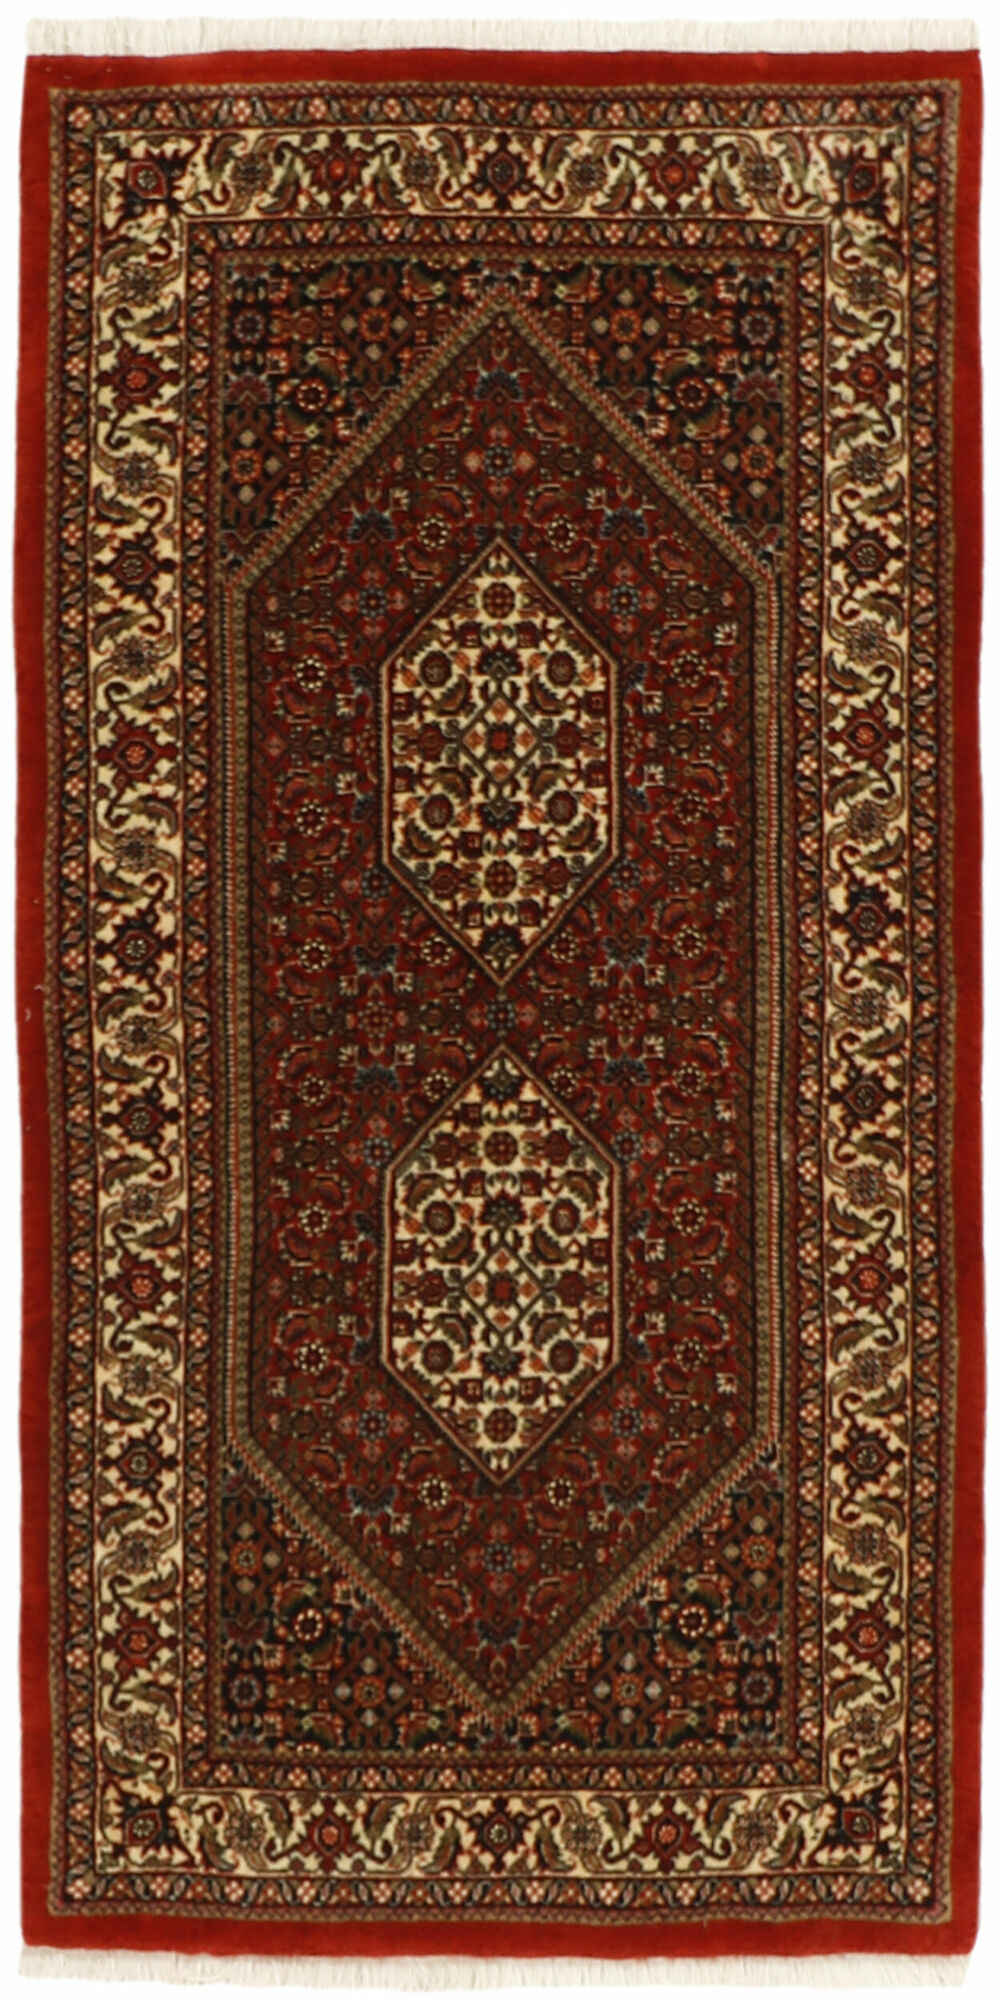 Annodato a mano. Provenienza: Persia / Iran Bidjar con seta Tappeto 72x143